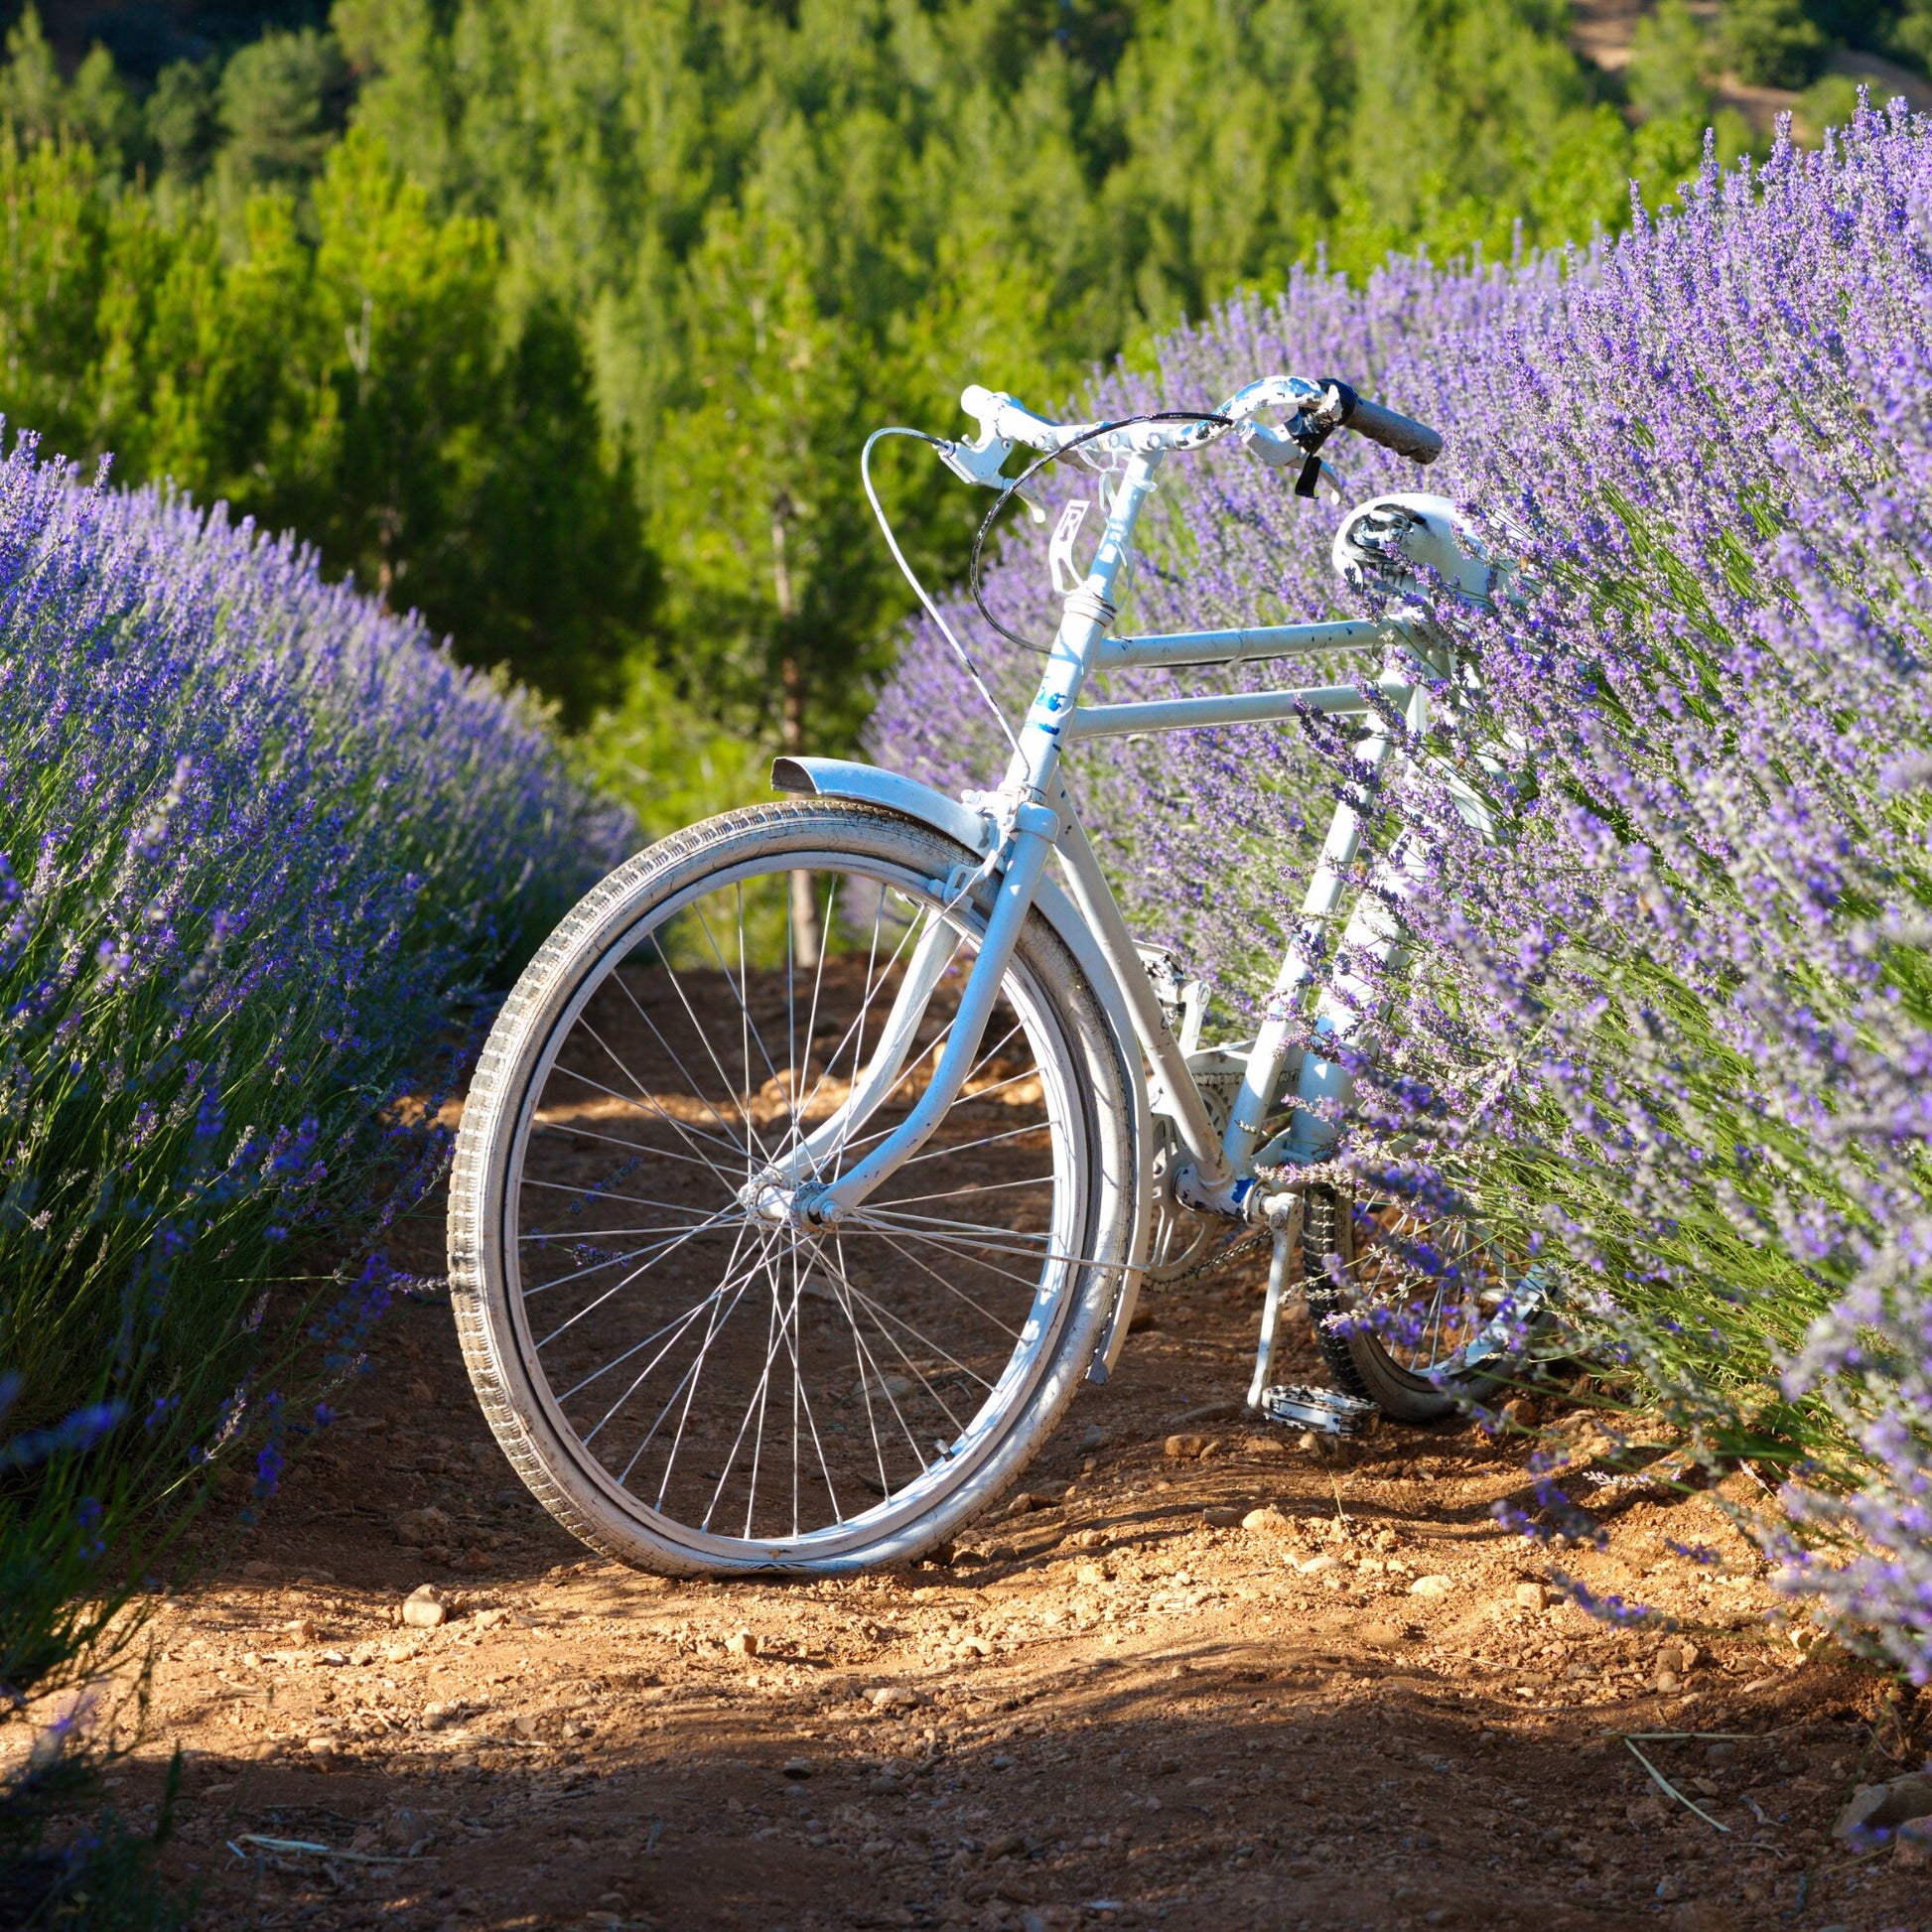 Rustikale Lavendelblüten-Olivenholzschale – handgefertigt aus natürlich gewachsenem Holz